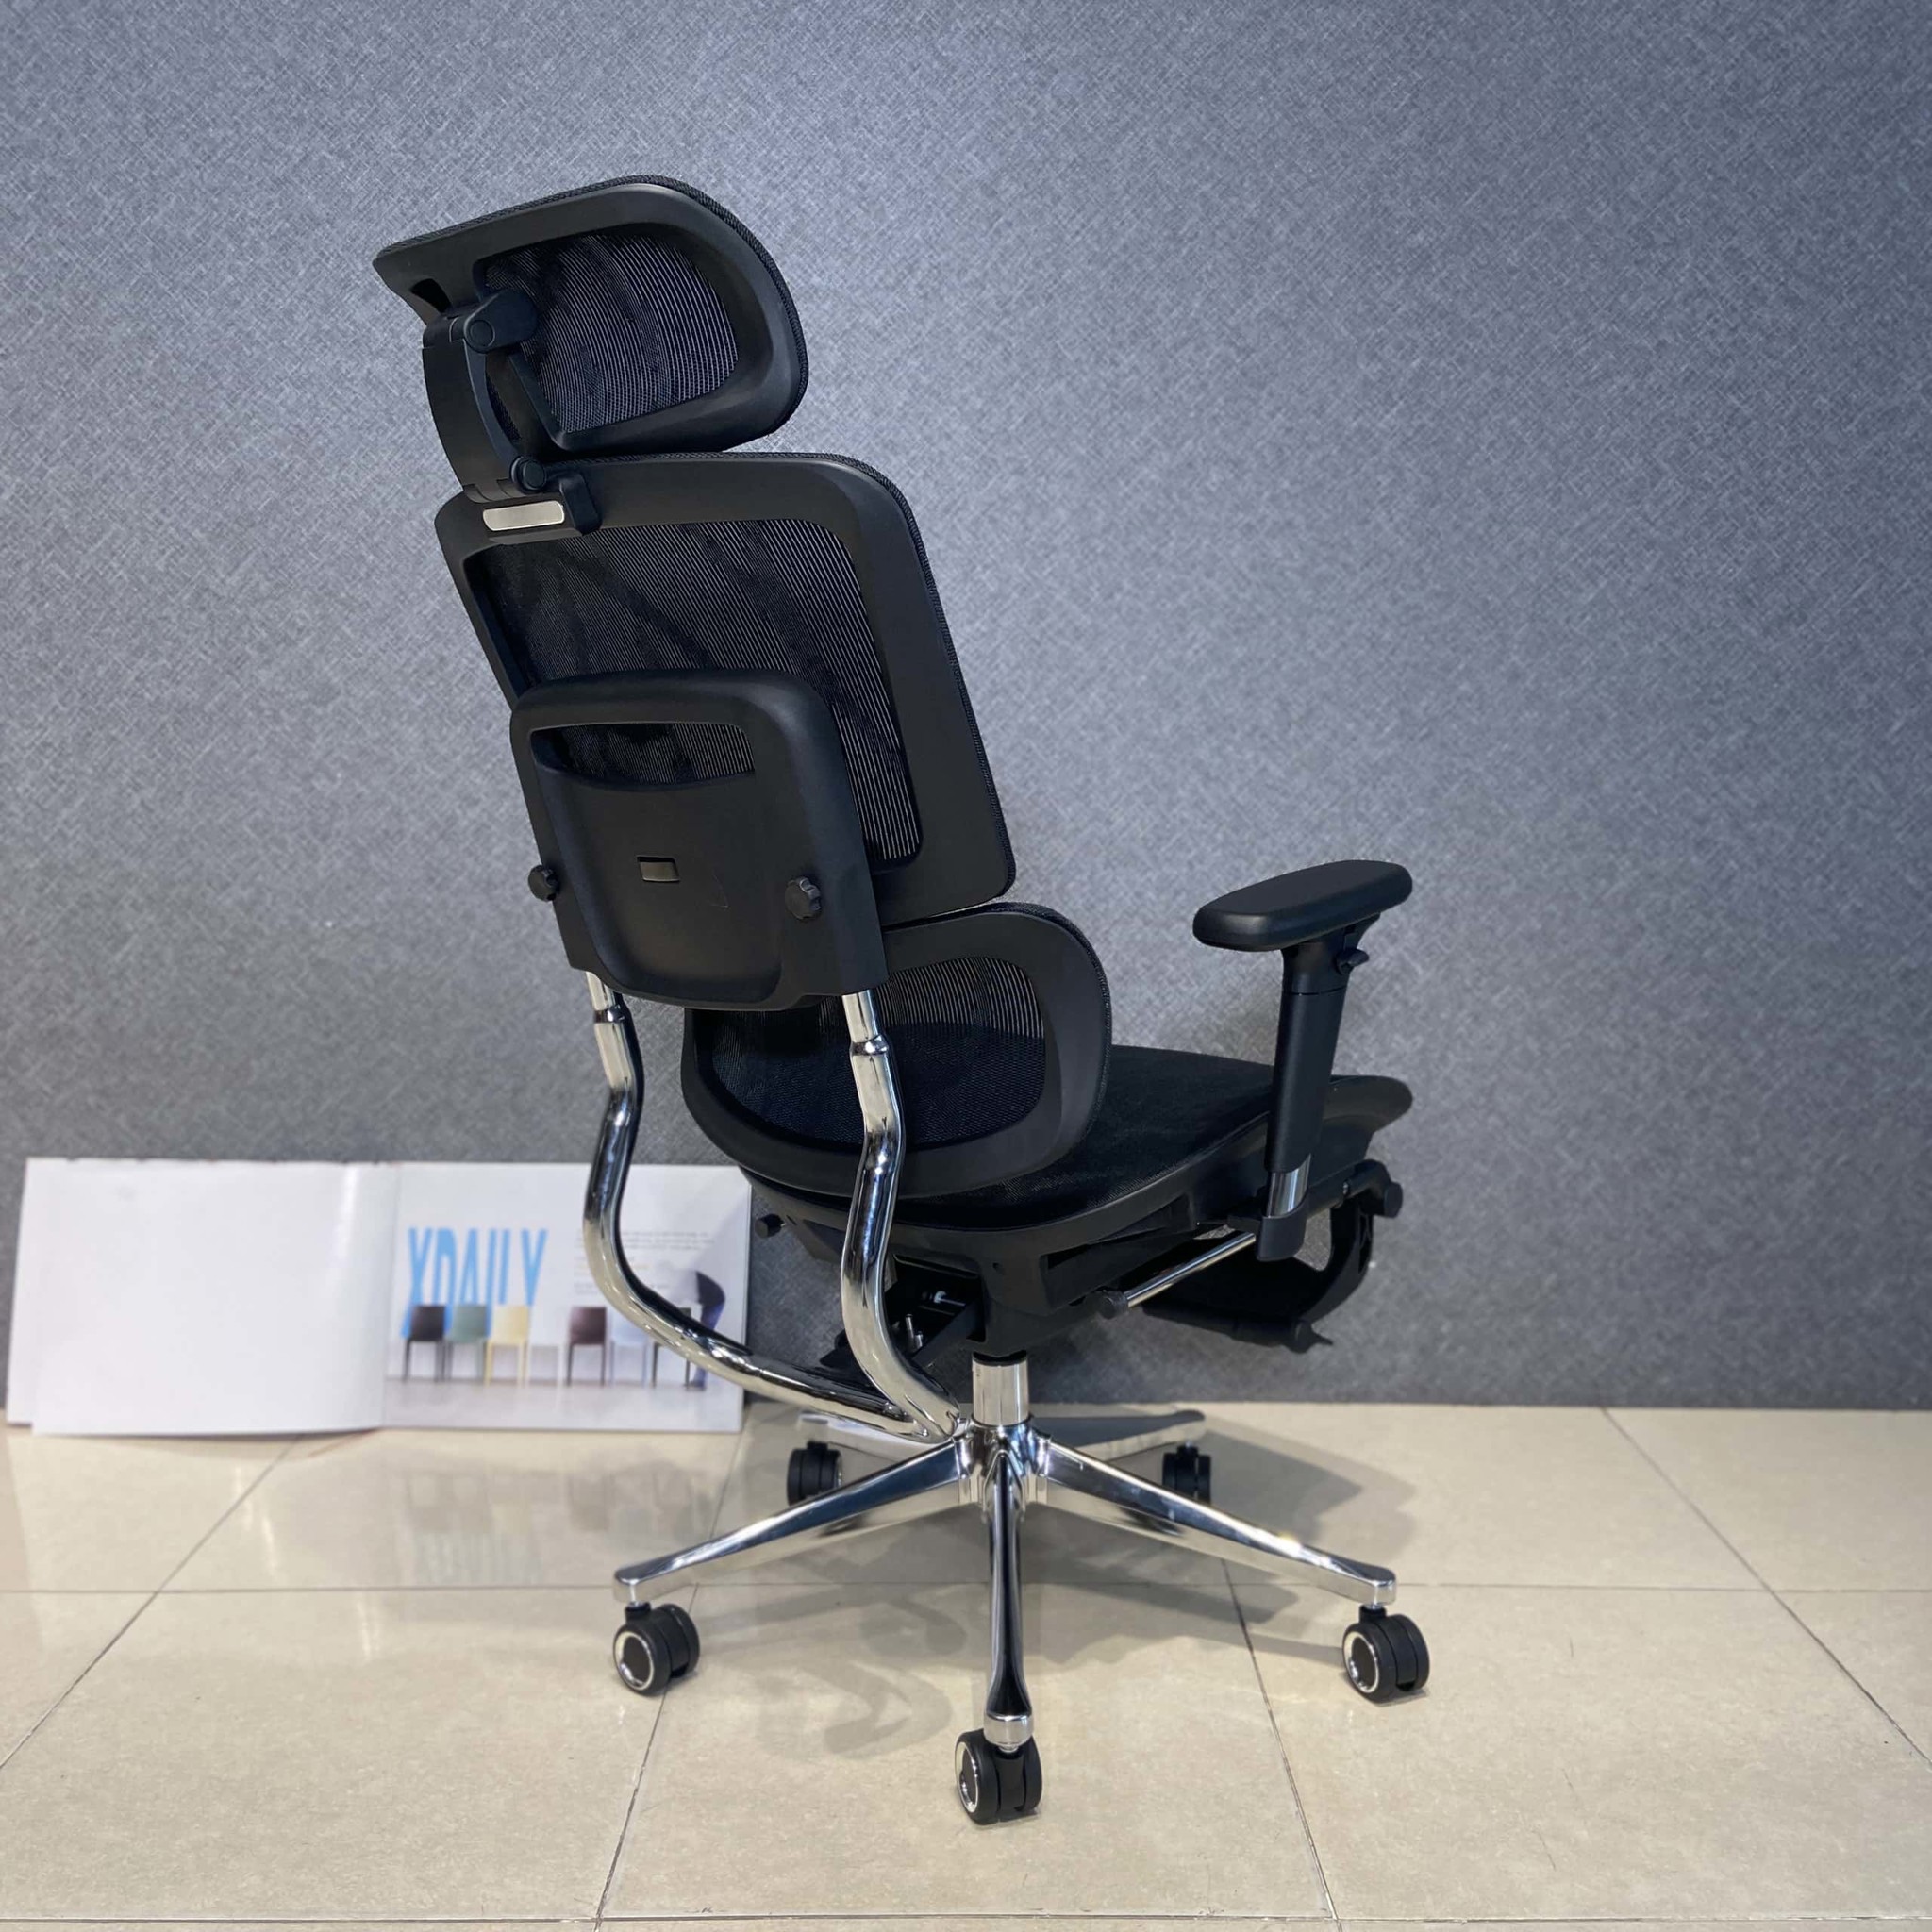 Ghế văn phòng Xdaily - GX526